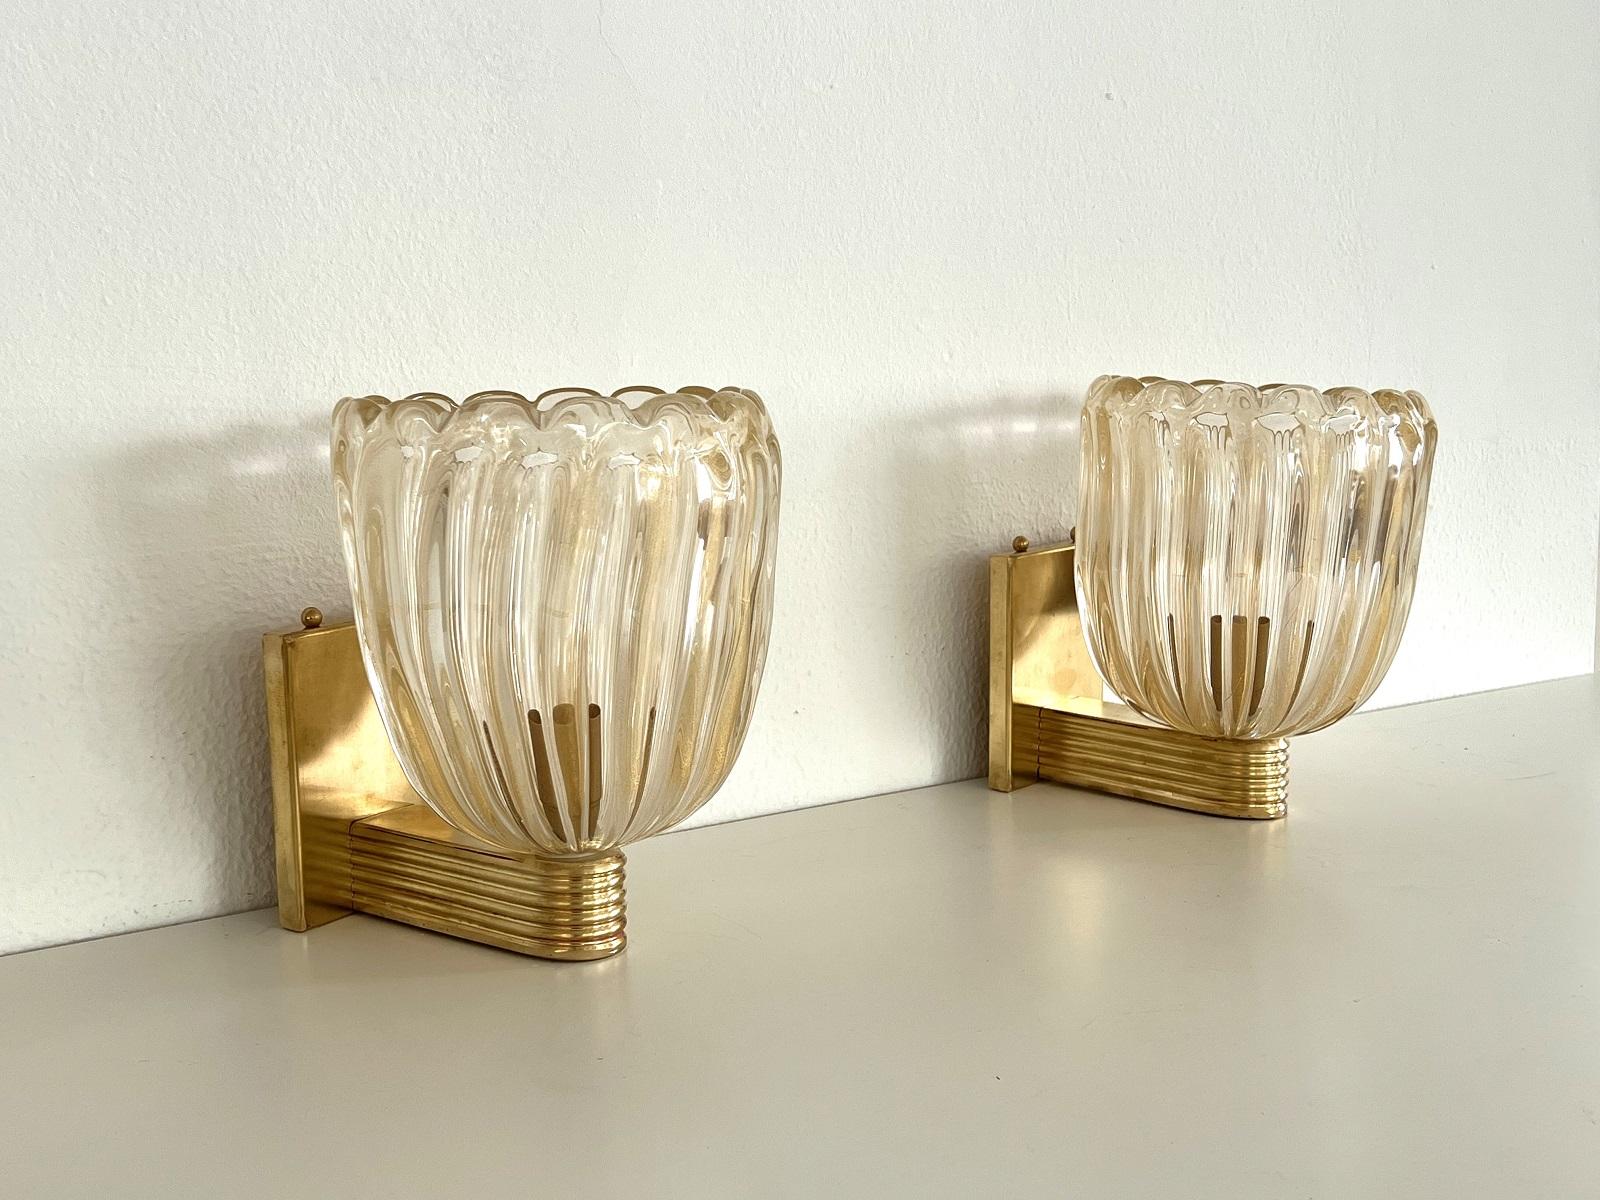 Wunderschönes Set aus zwei prächtigen Messing-Wandlampen mit starkem Messingsockel und transparenten, dicken Murano-Gläsern mit goldenem Schimmer/Glitter im Inneren des Glases. Art-Déco-Stil.
Die schönen handgefertigten Gläser haben eine leichte